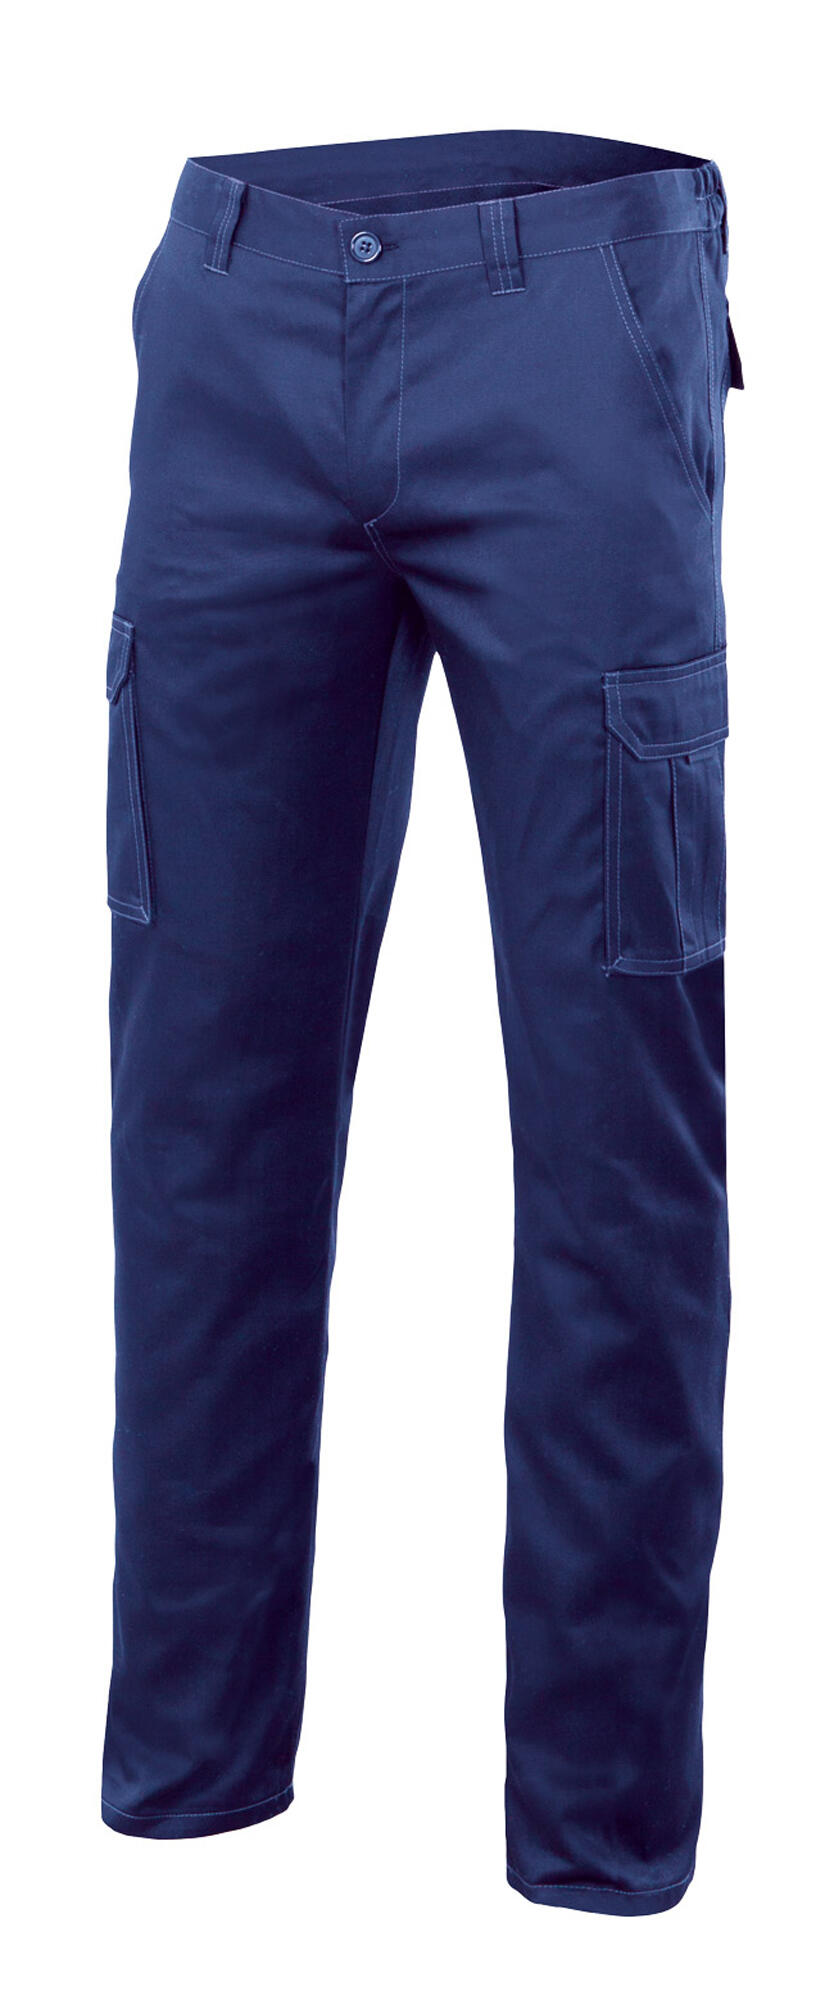 Pantalon de trabajo multibolsillo stretch azulina t 44